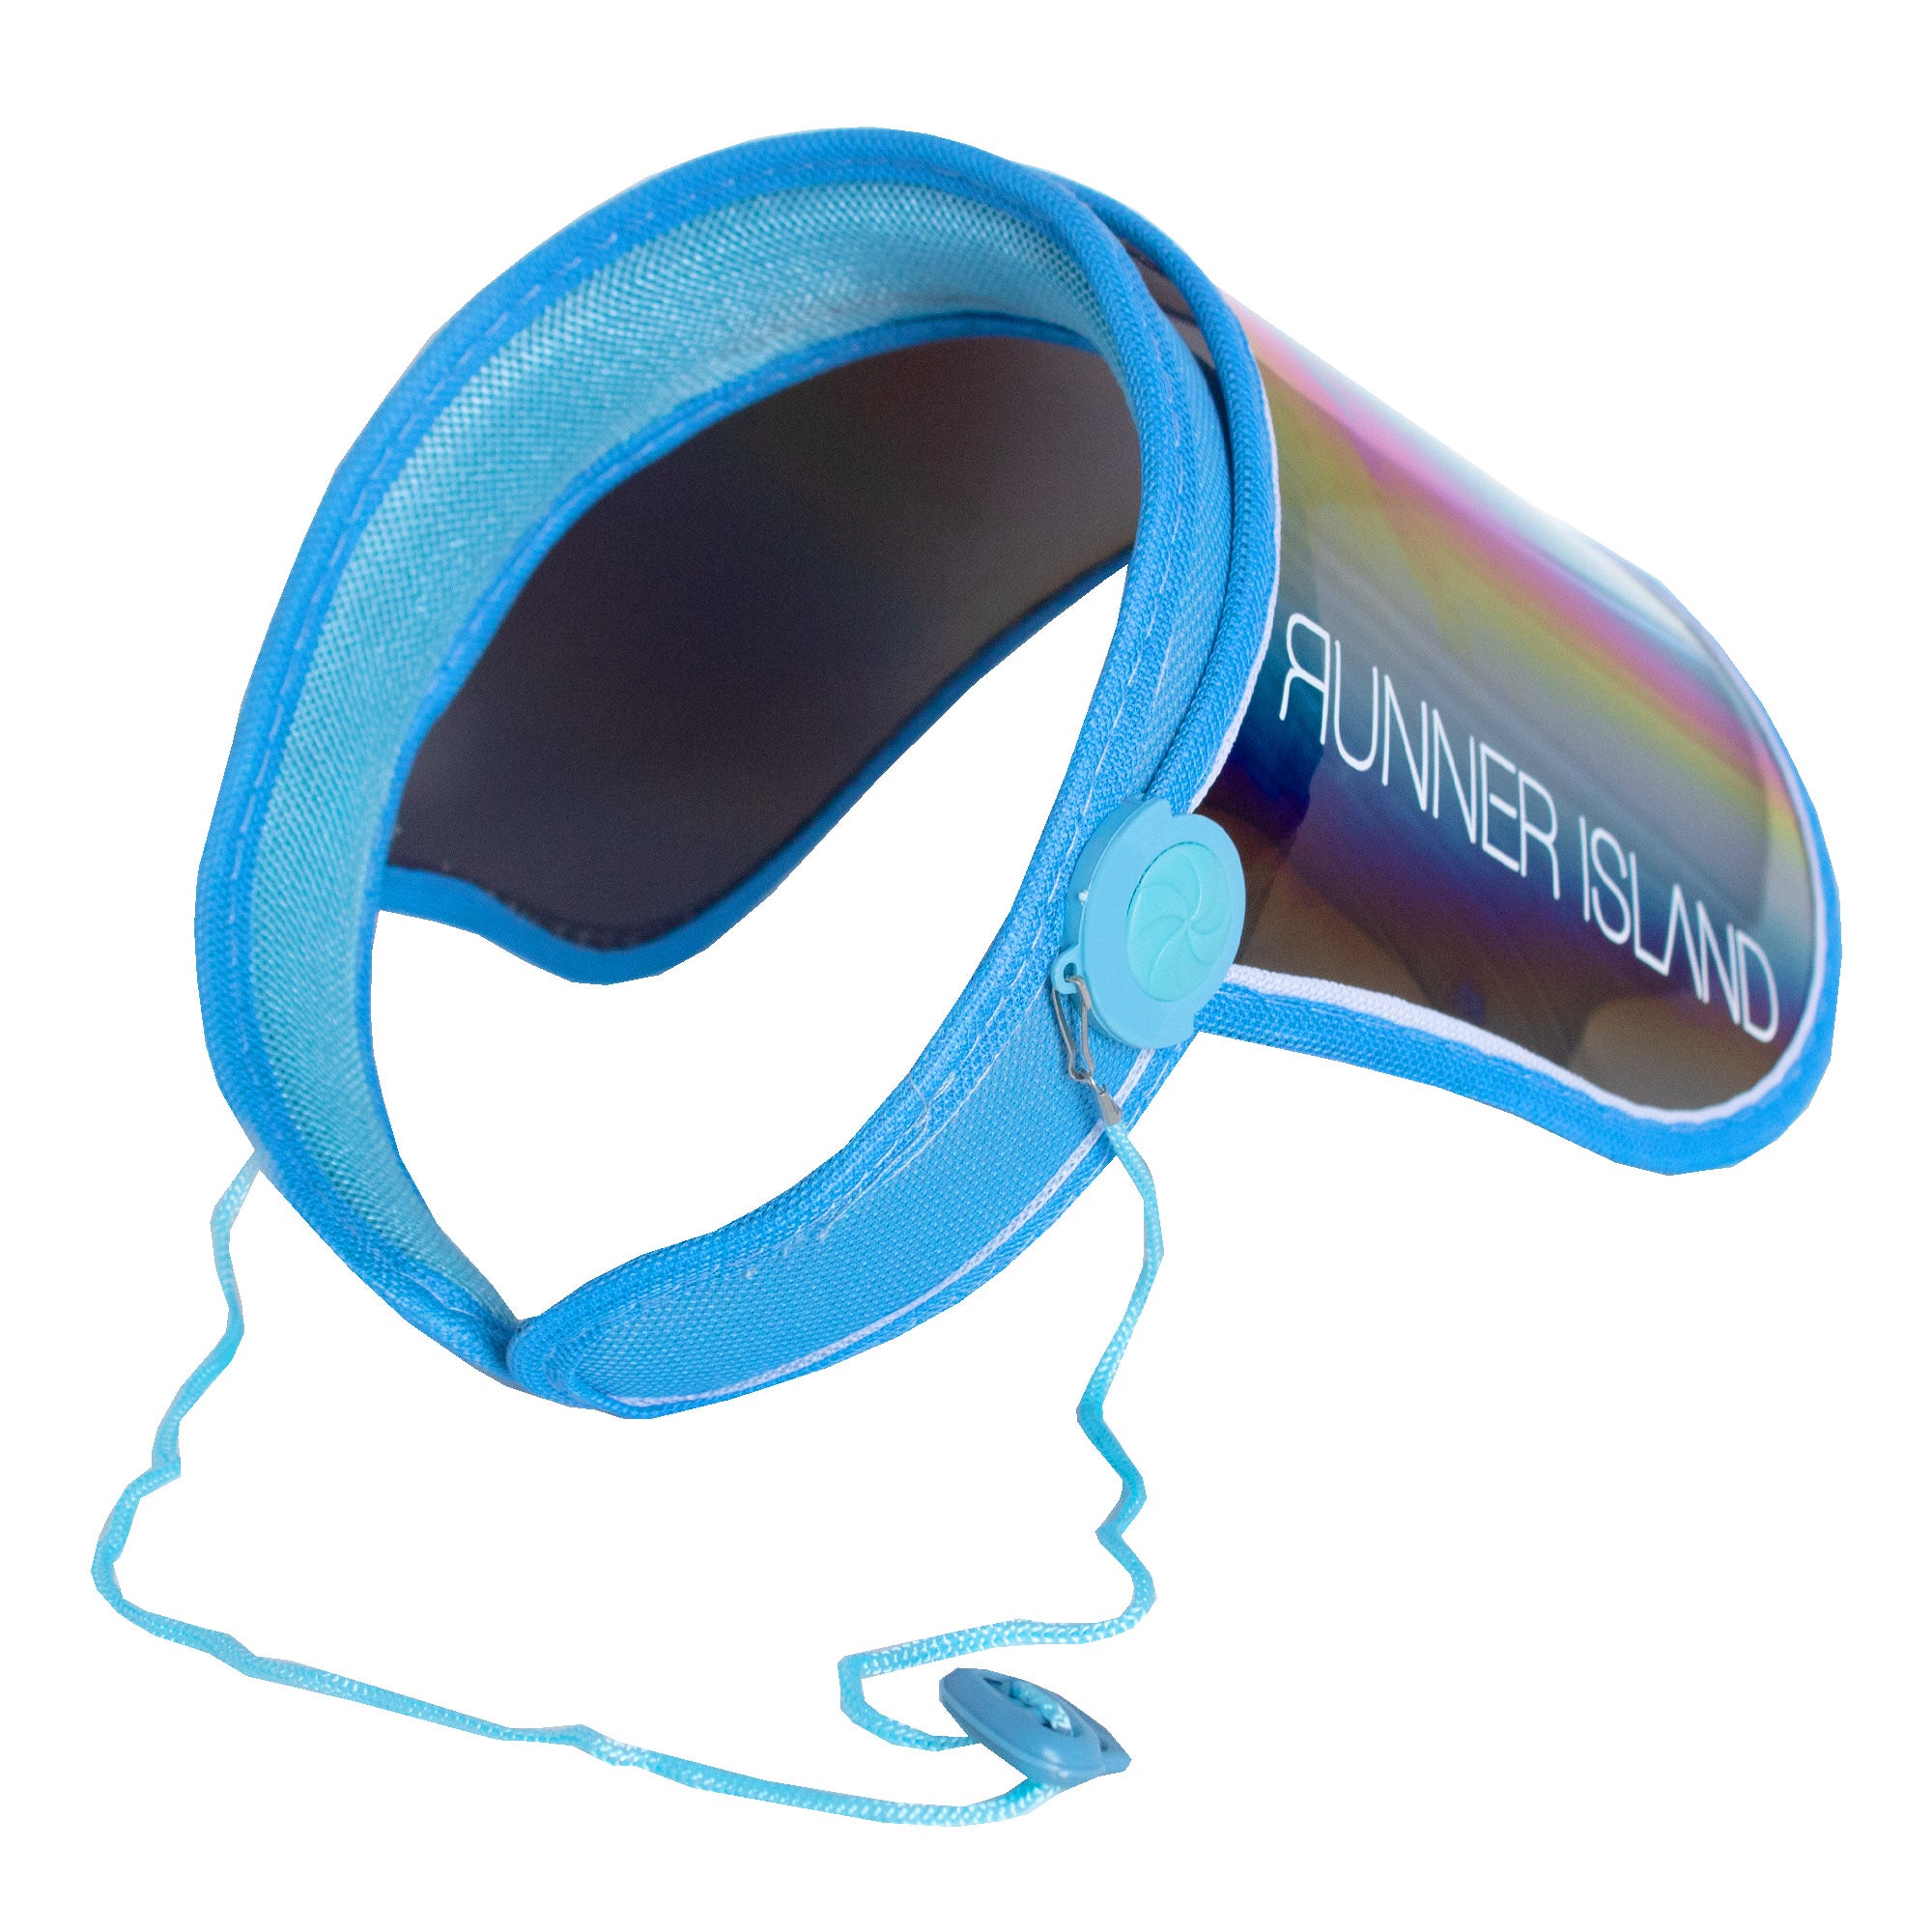 Runner Island Face Shield Sunglasses Visor - Sky Blue